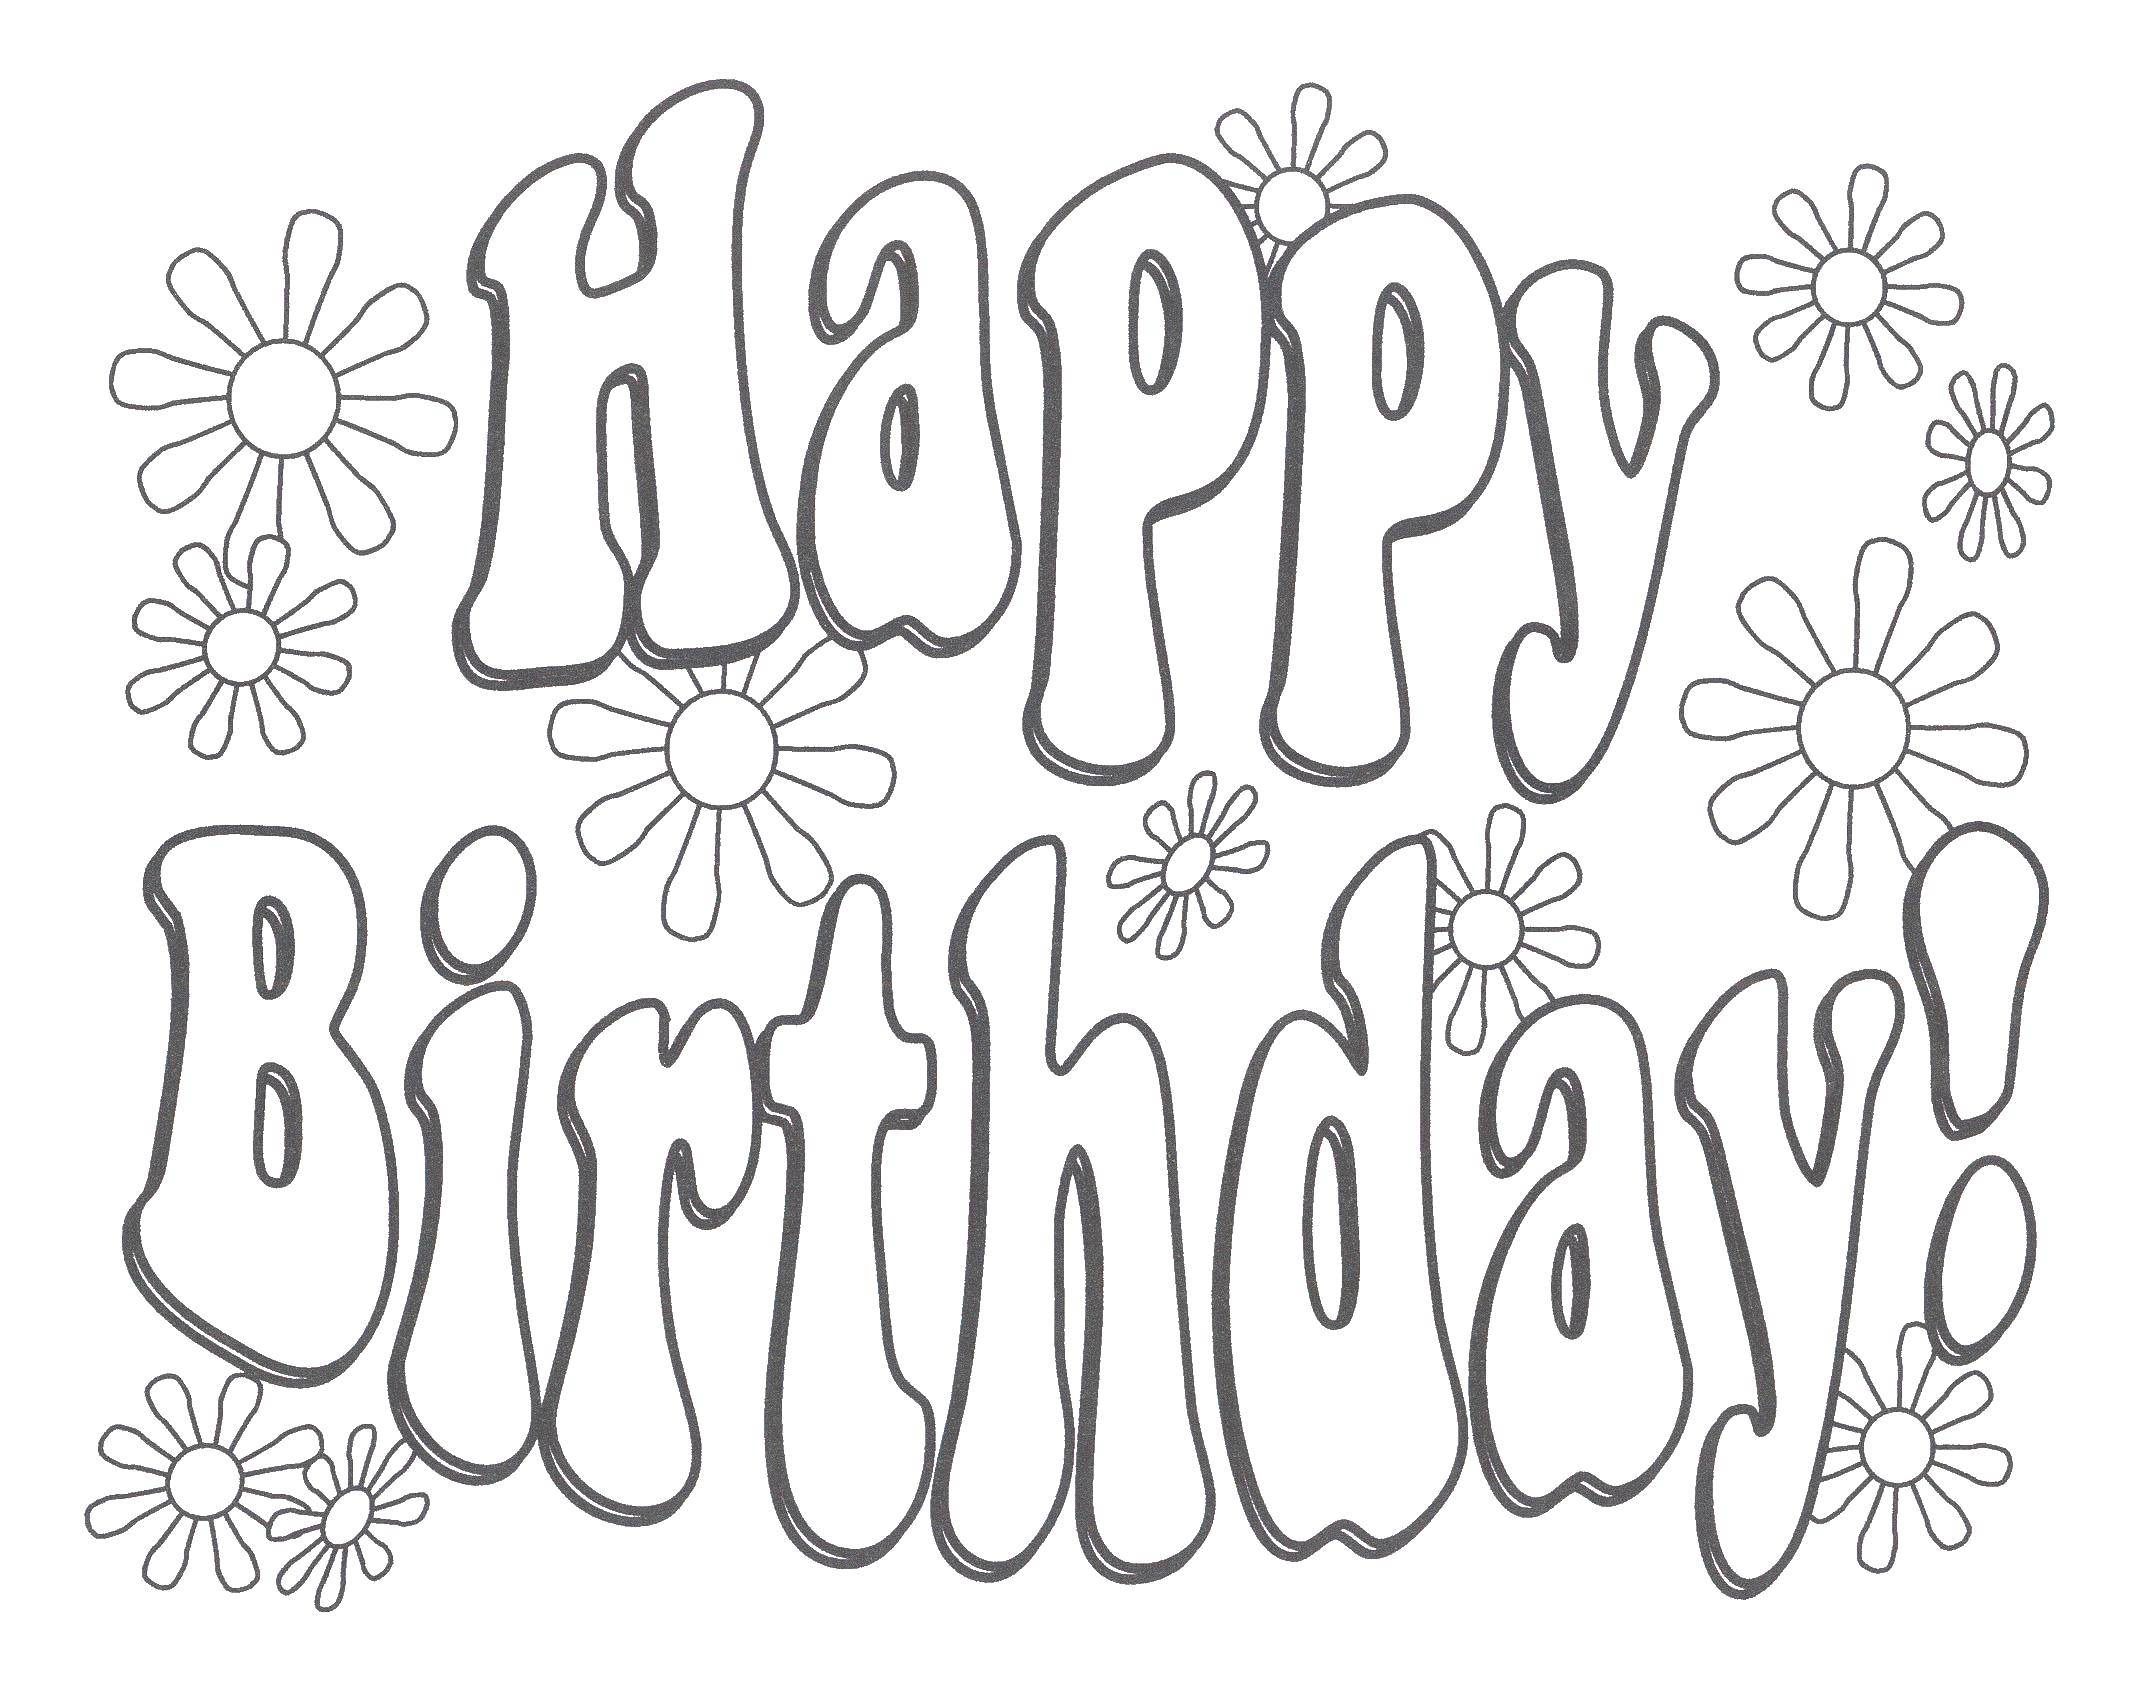 Название: Раскраска С днем рождения. Категория: день рождения. Теги: день рождения, надпись, поздравление.